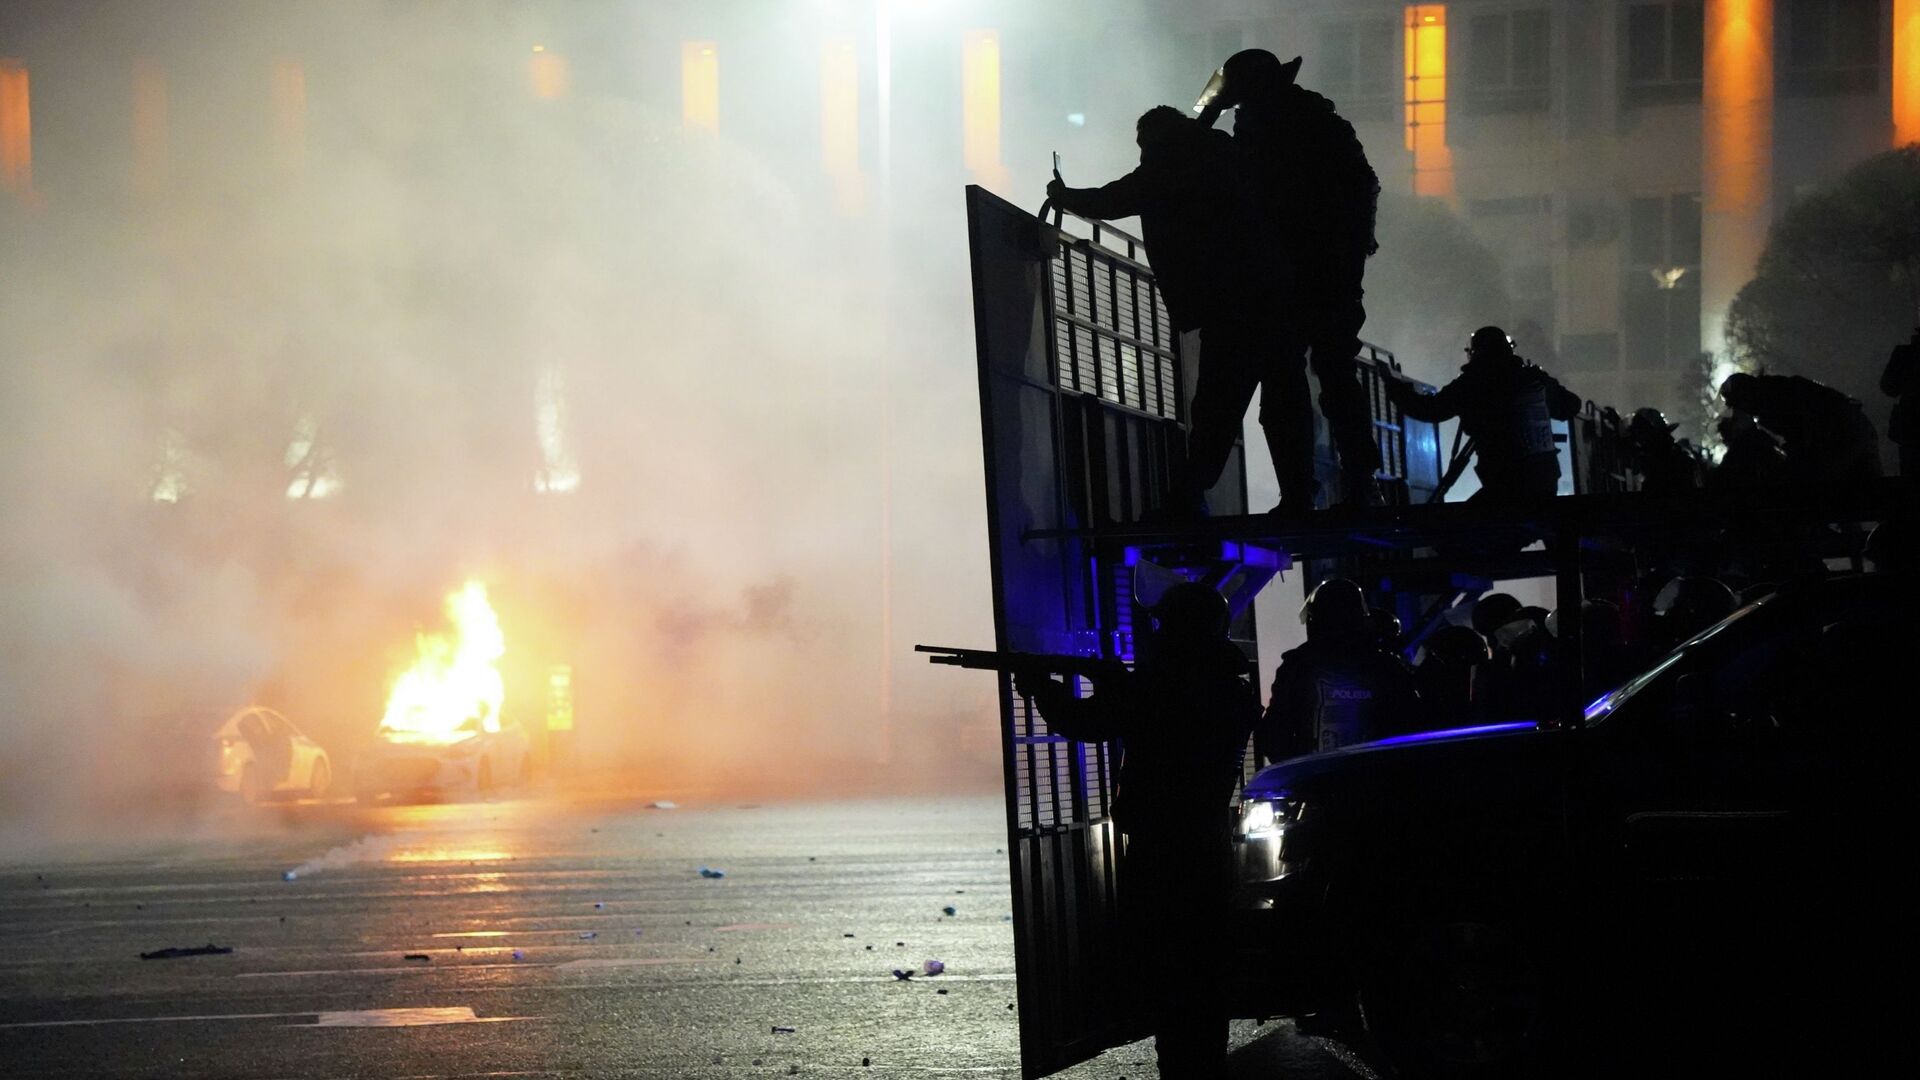 Полицейская машина горит, когда ОМОН готовится остановить демонстрантов в центре Алматы, Казахстан, среда, 5 января 2022 г.  - Sputnik Казахстан, 1920, 18.07.2022